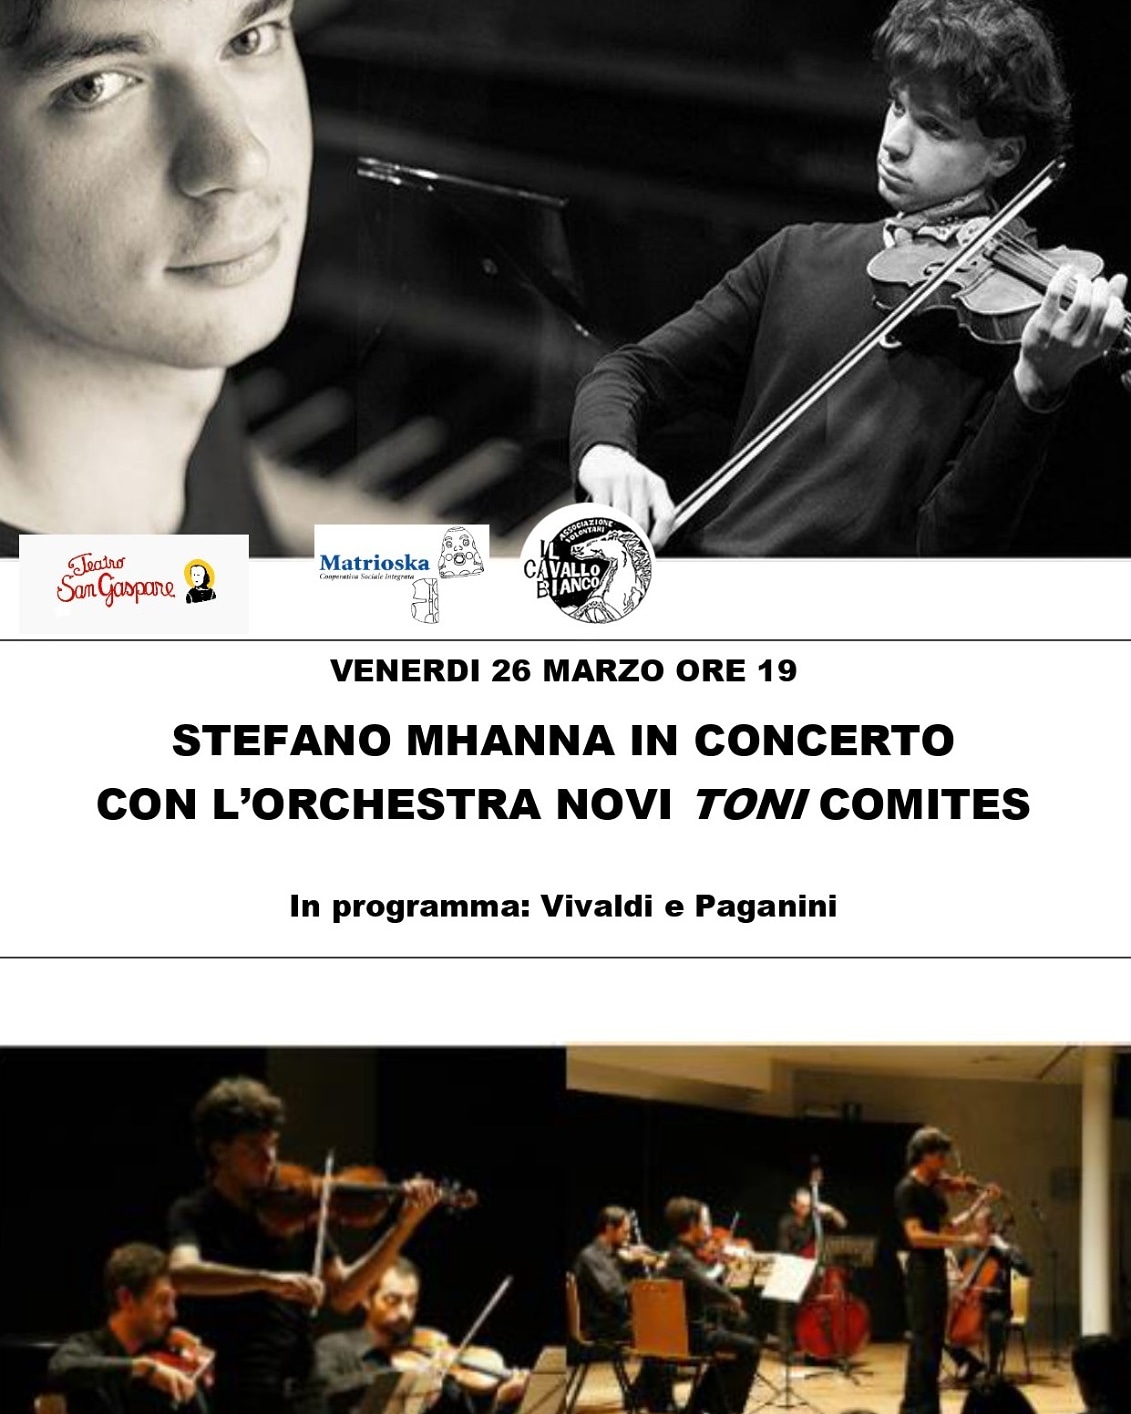 Stefano Mhanna con l'orchestra "Novi Toni Comites" in concerto